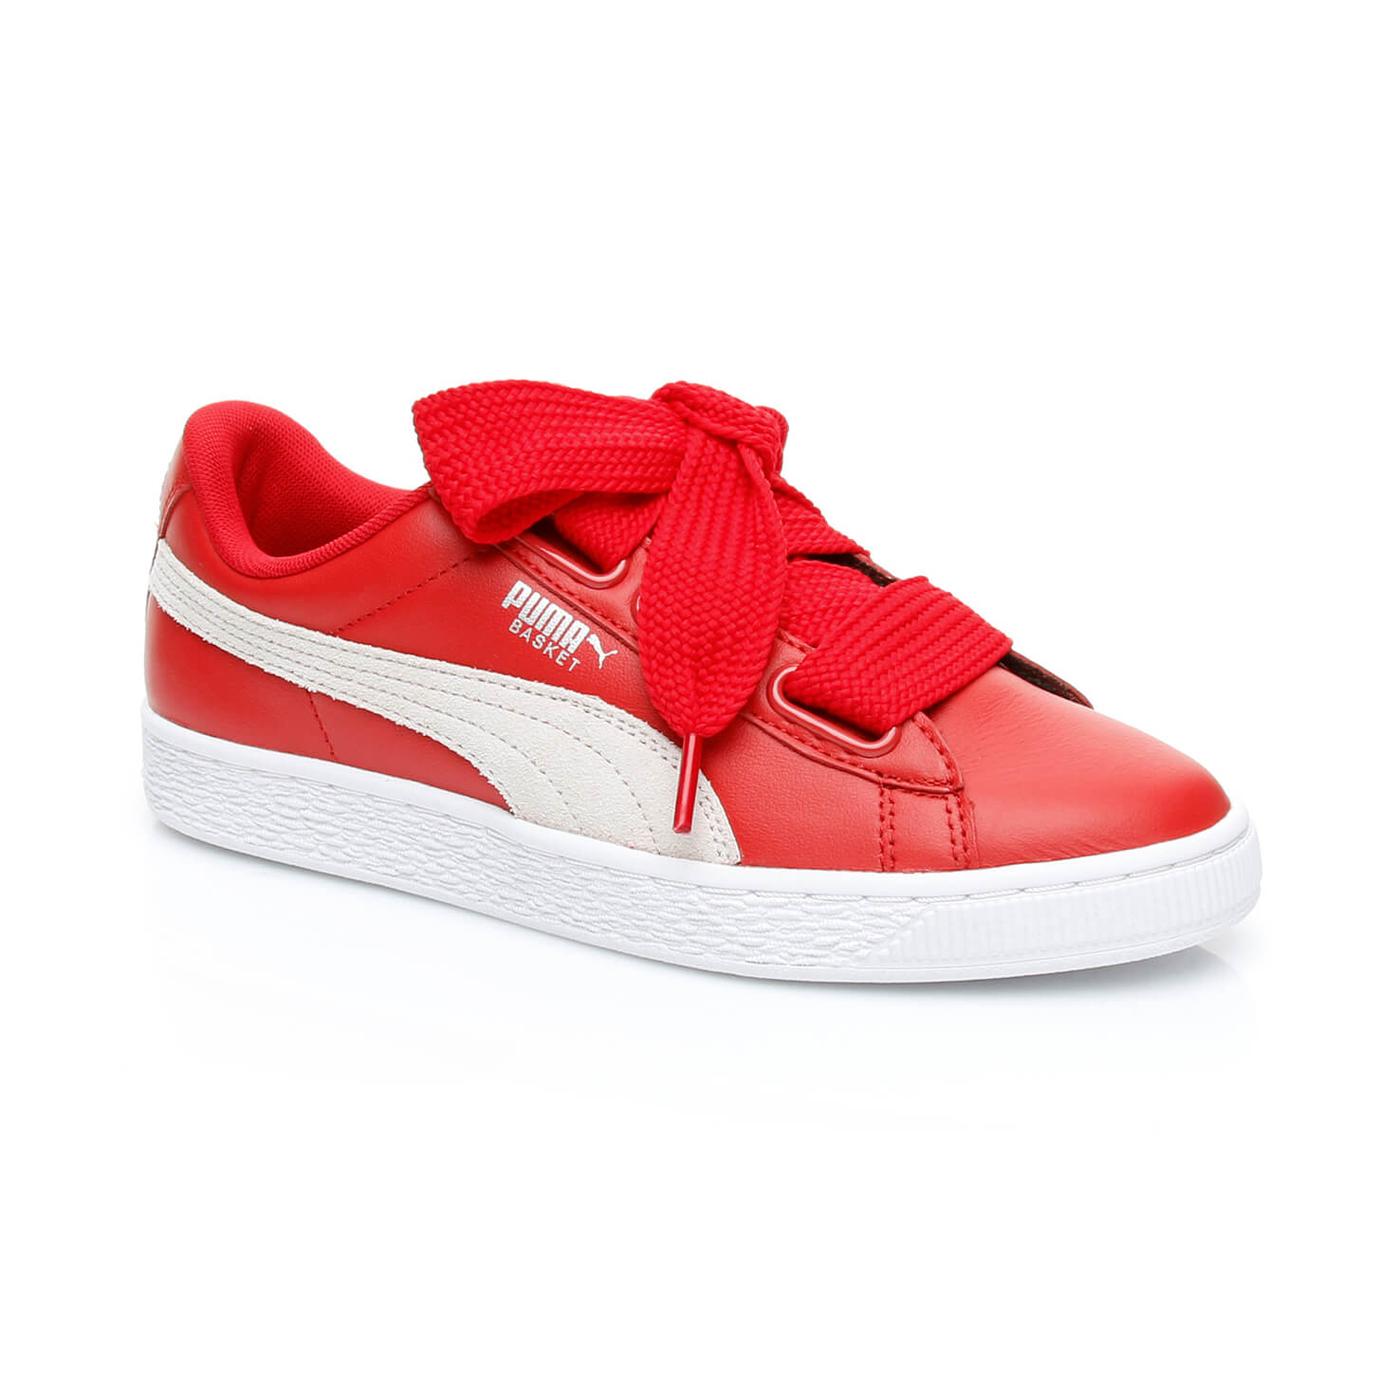 Puma Basket Heart Kadın Kırmızı Sneaker